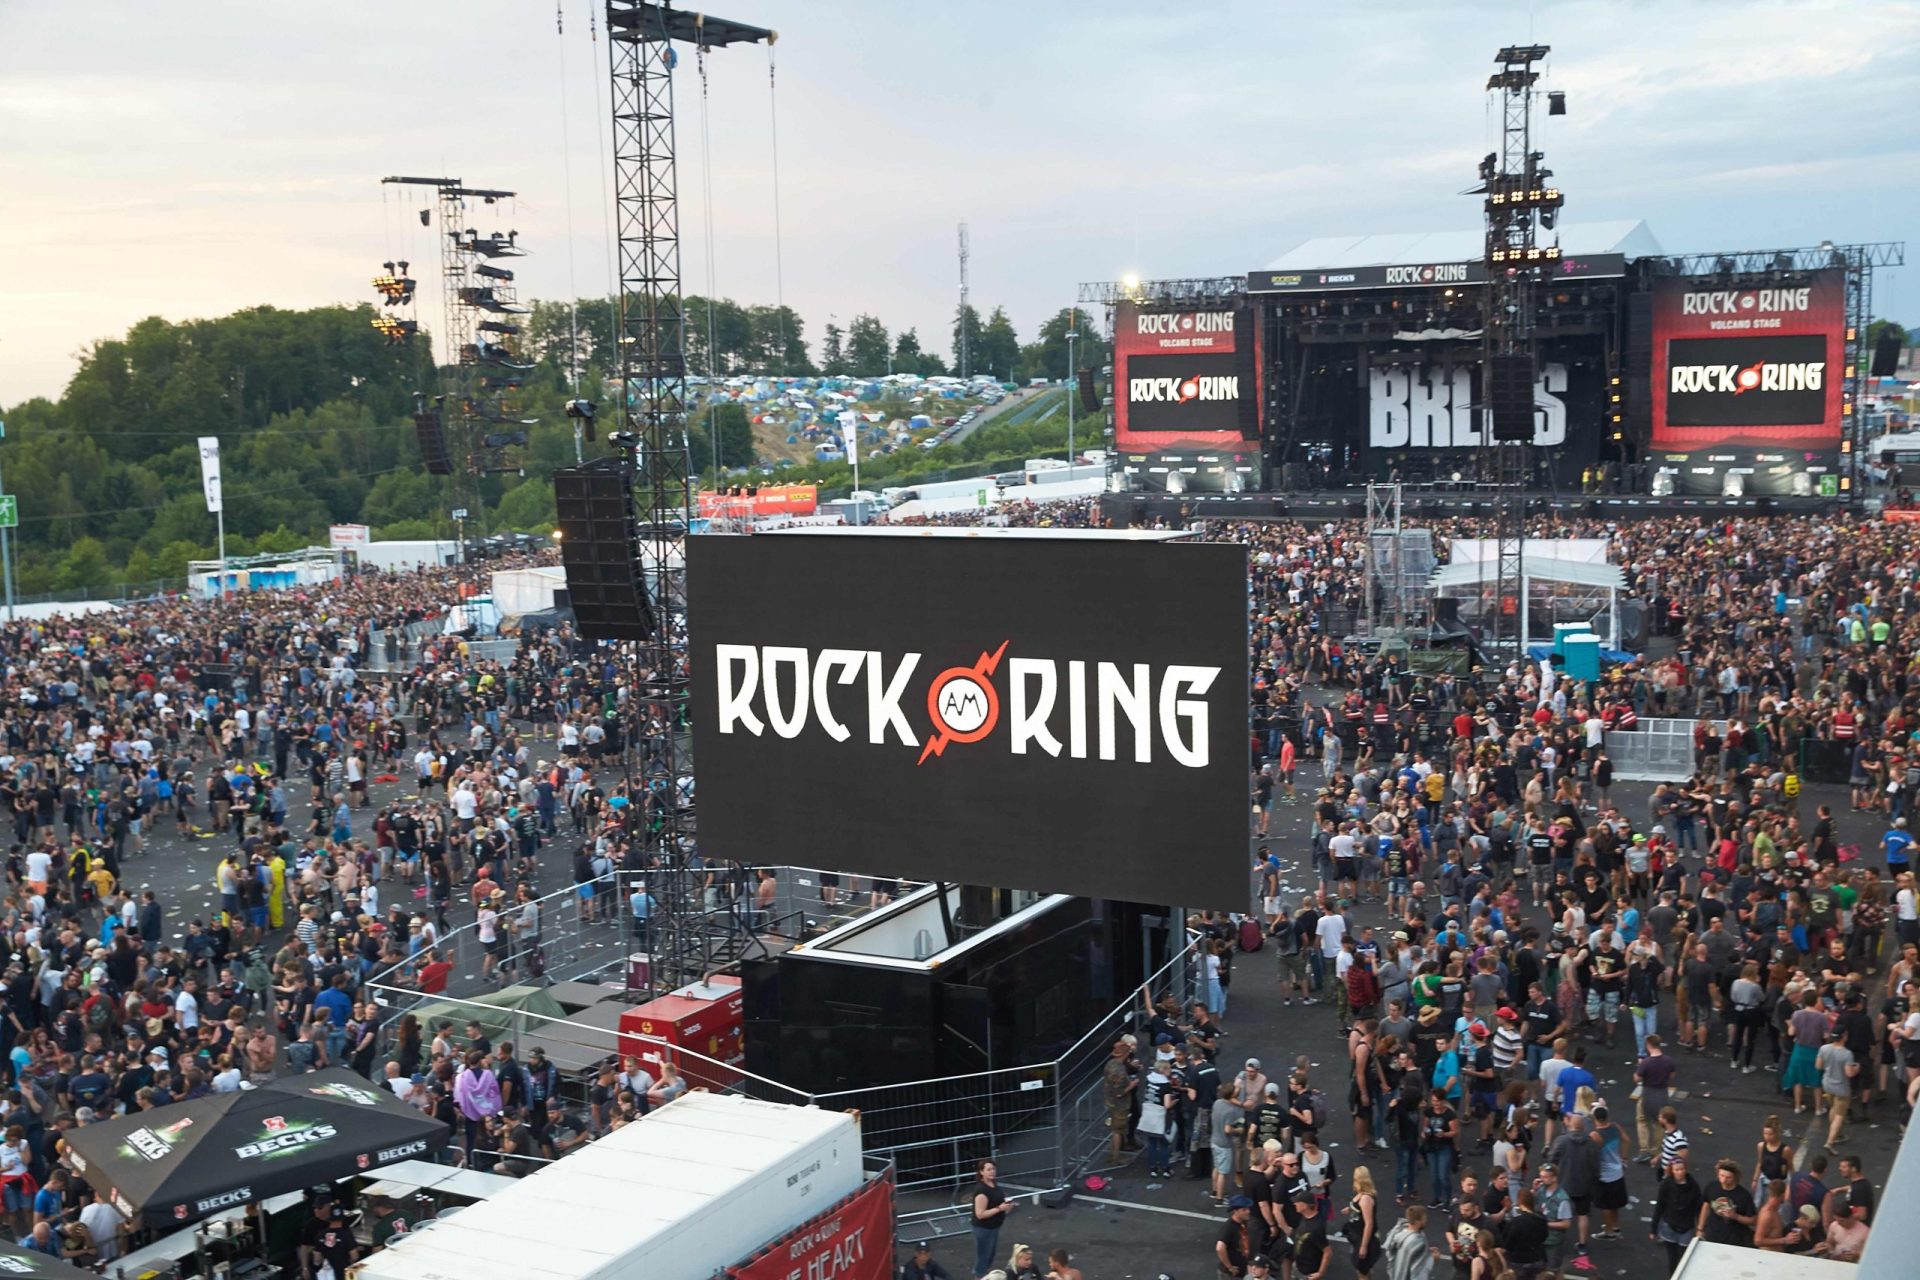 Alemanha. Festival Rock Am Ring evacuado devido a ameaça terrorista